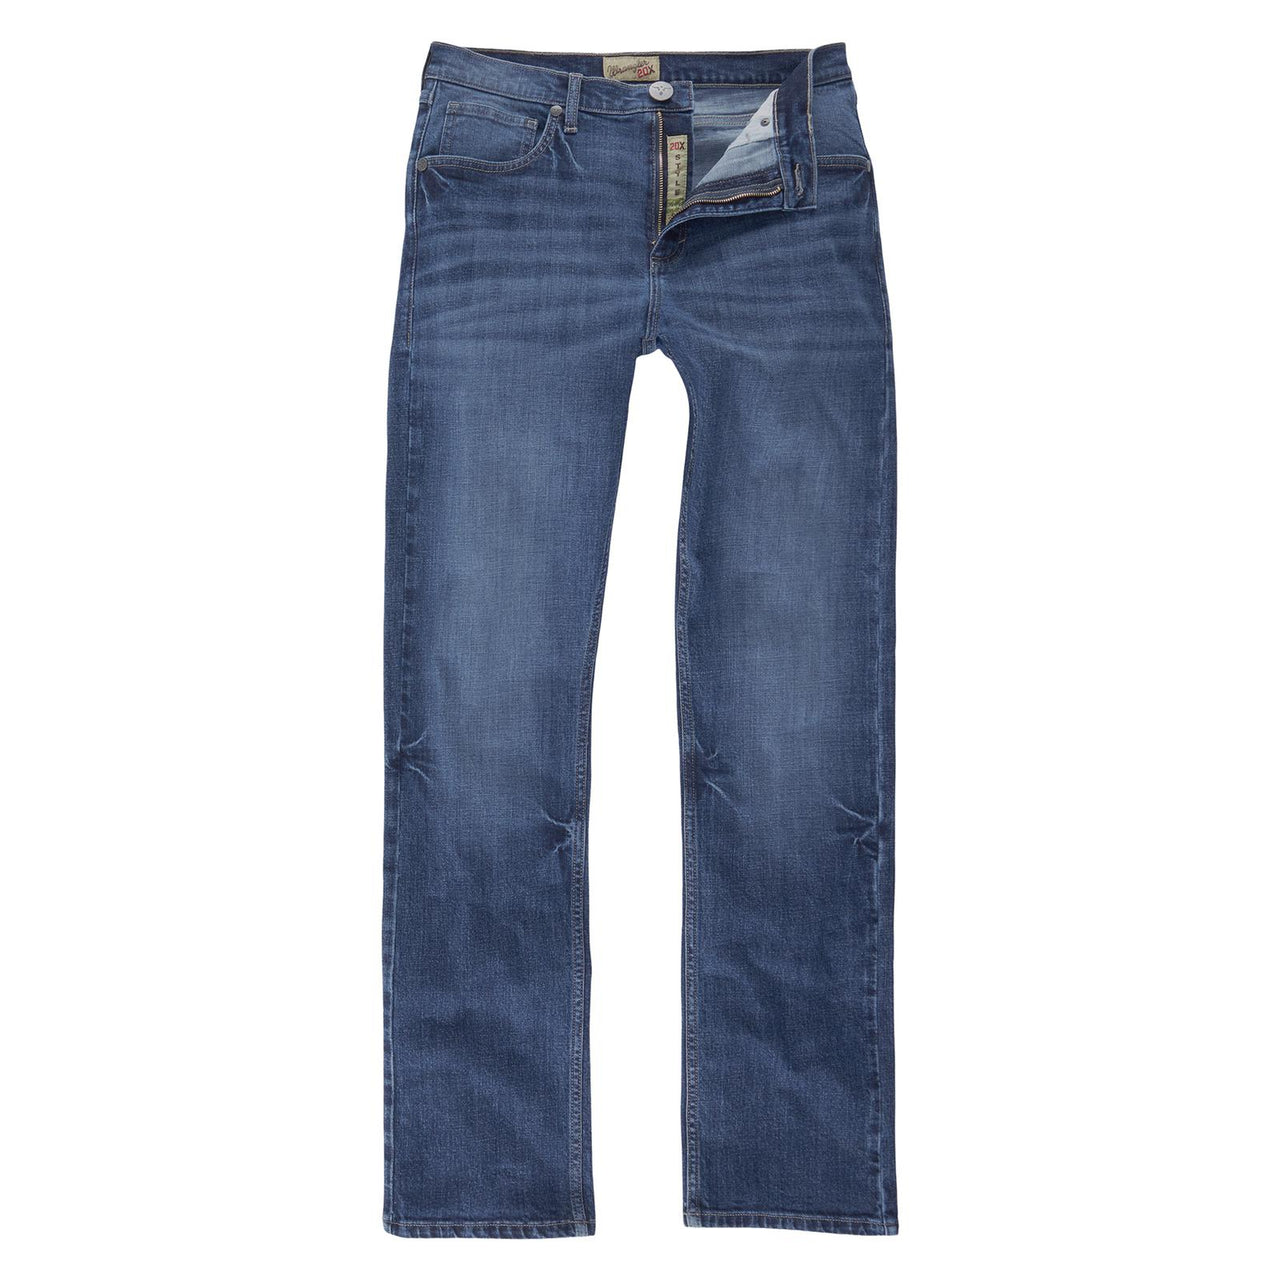 Wrangler Men's 20X Slim Straight Jean